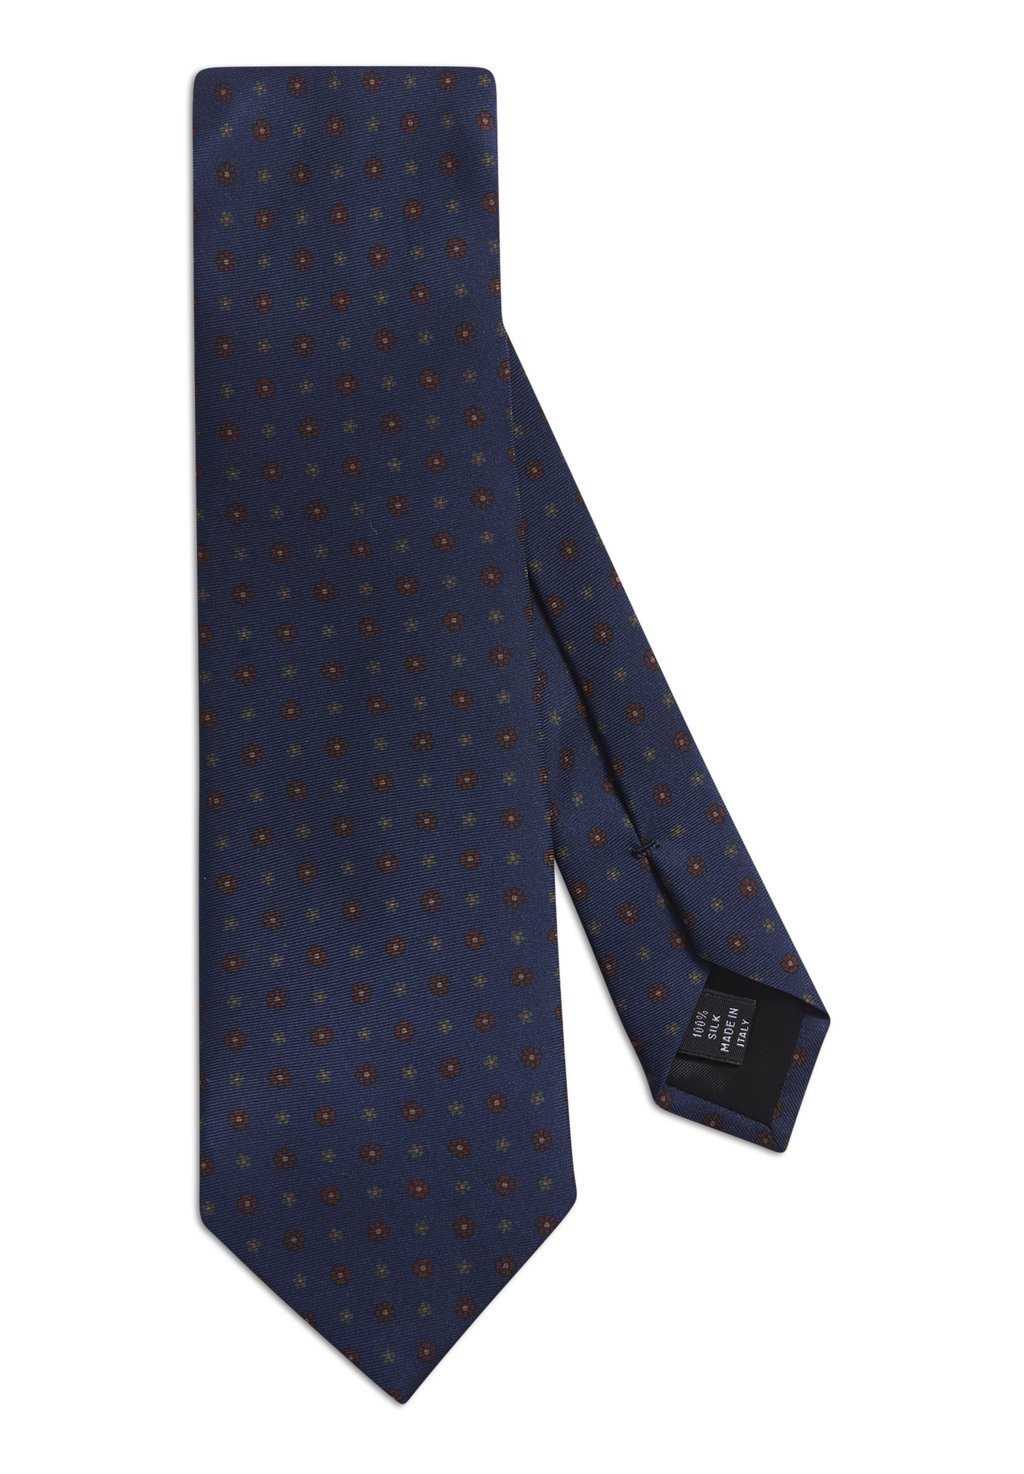 галстук oscar jacobson цвет french blue Галстук Oscar Jacobson, цвет french blue